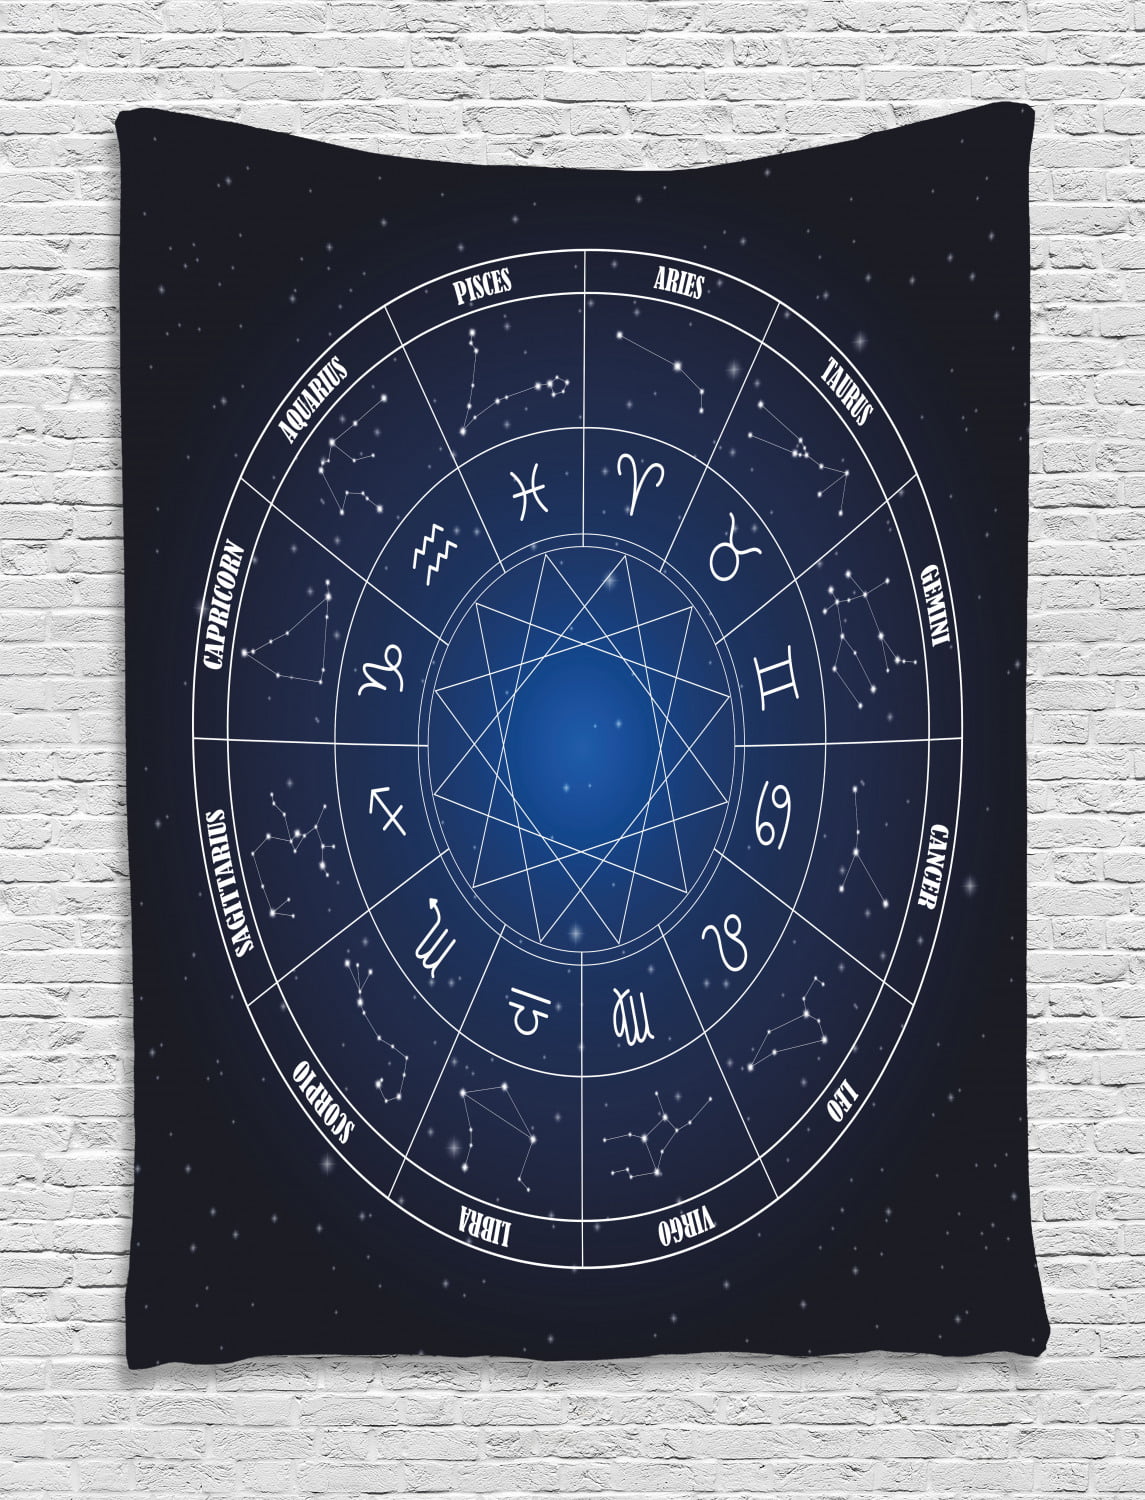 zodiac wheel with dates